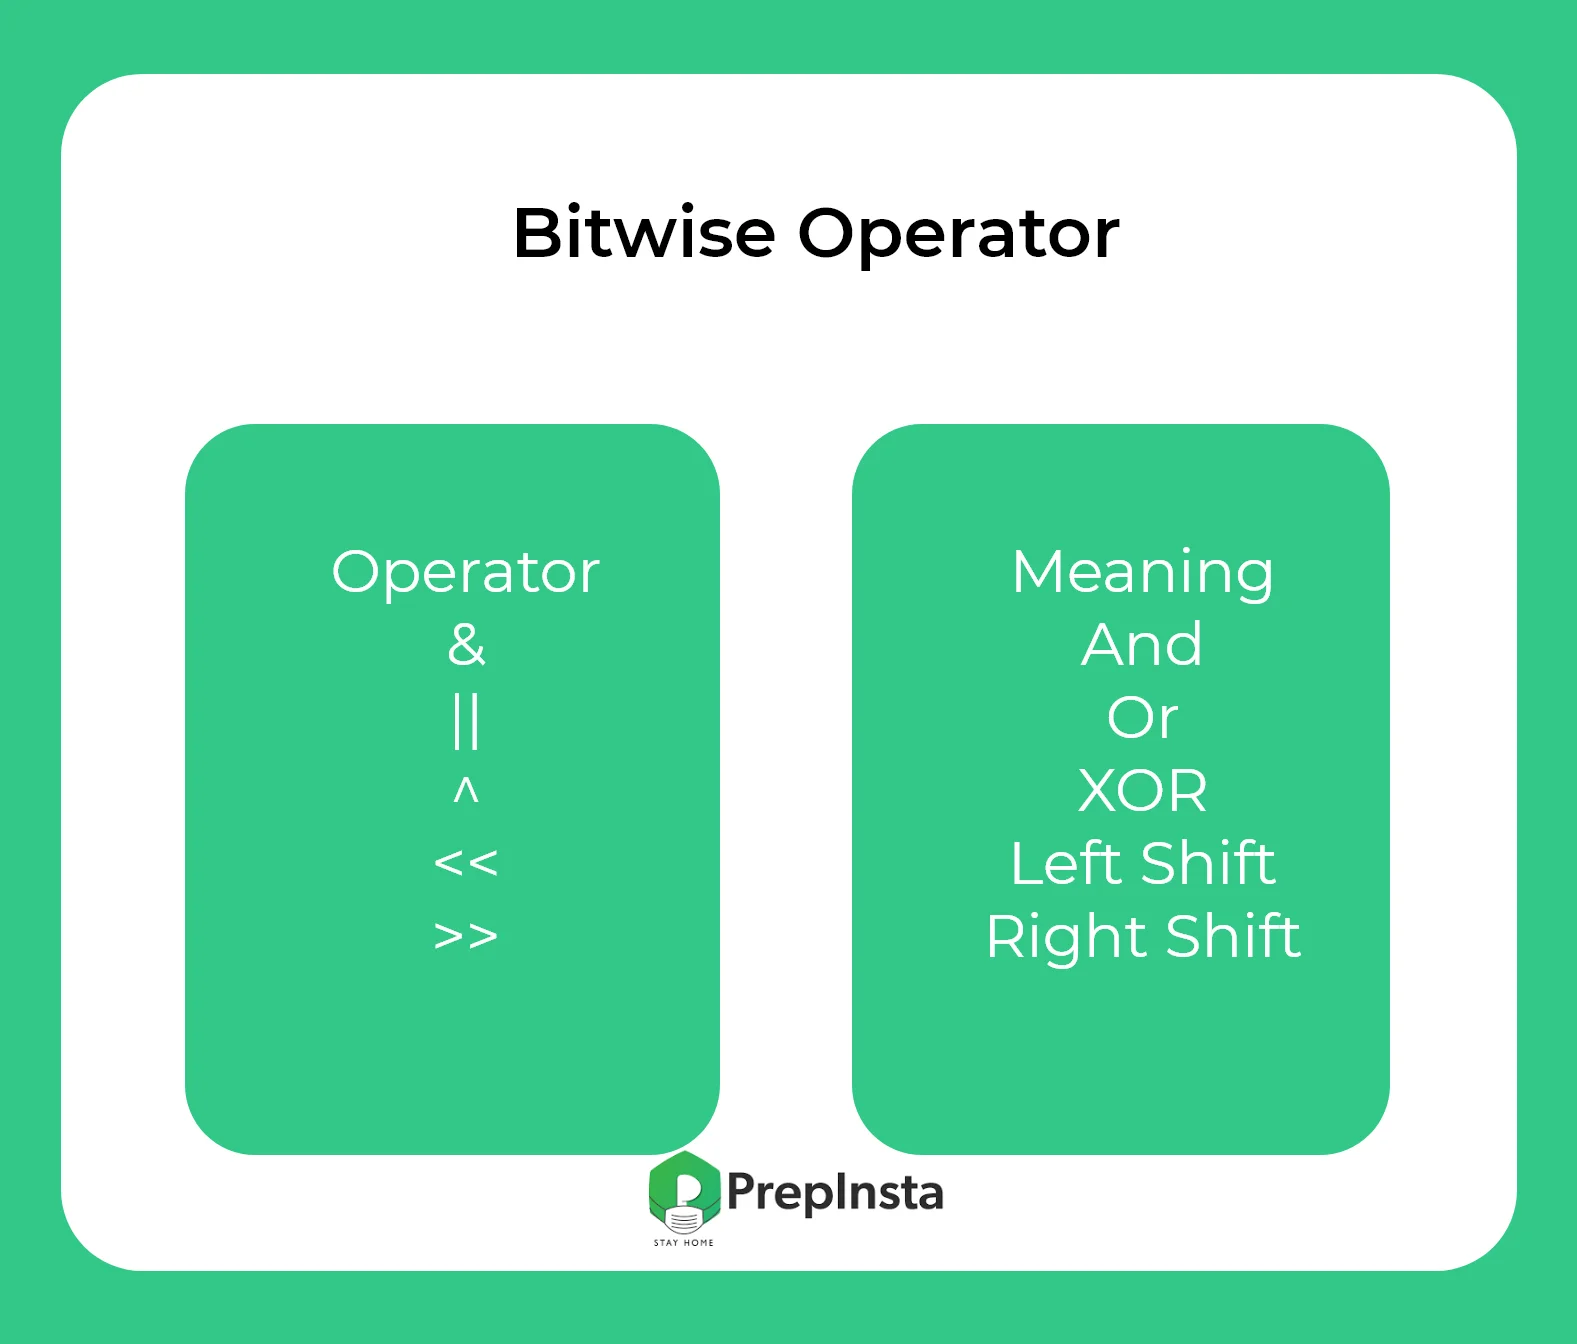 Bitwise operator